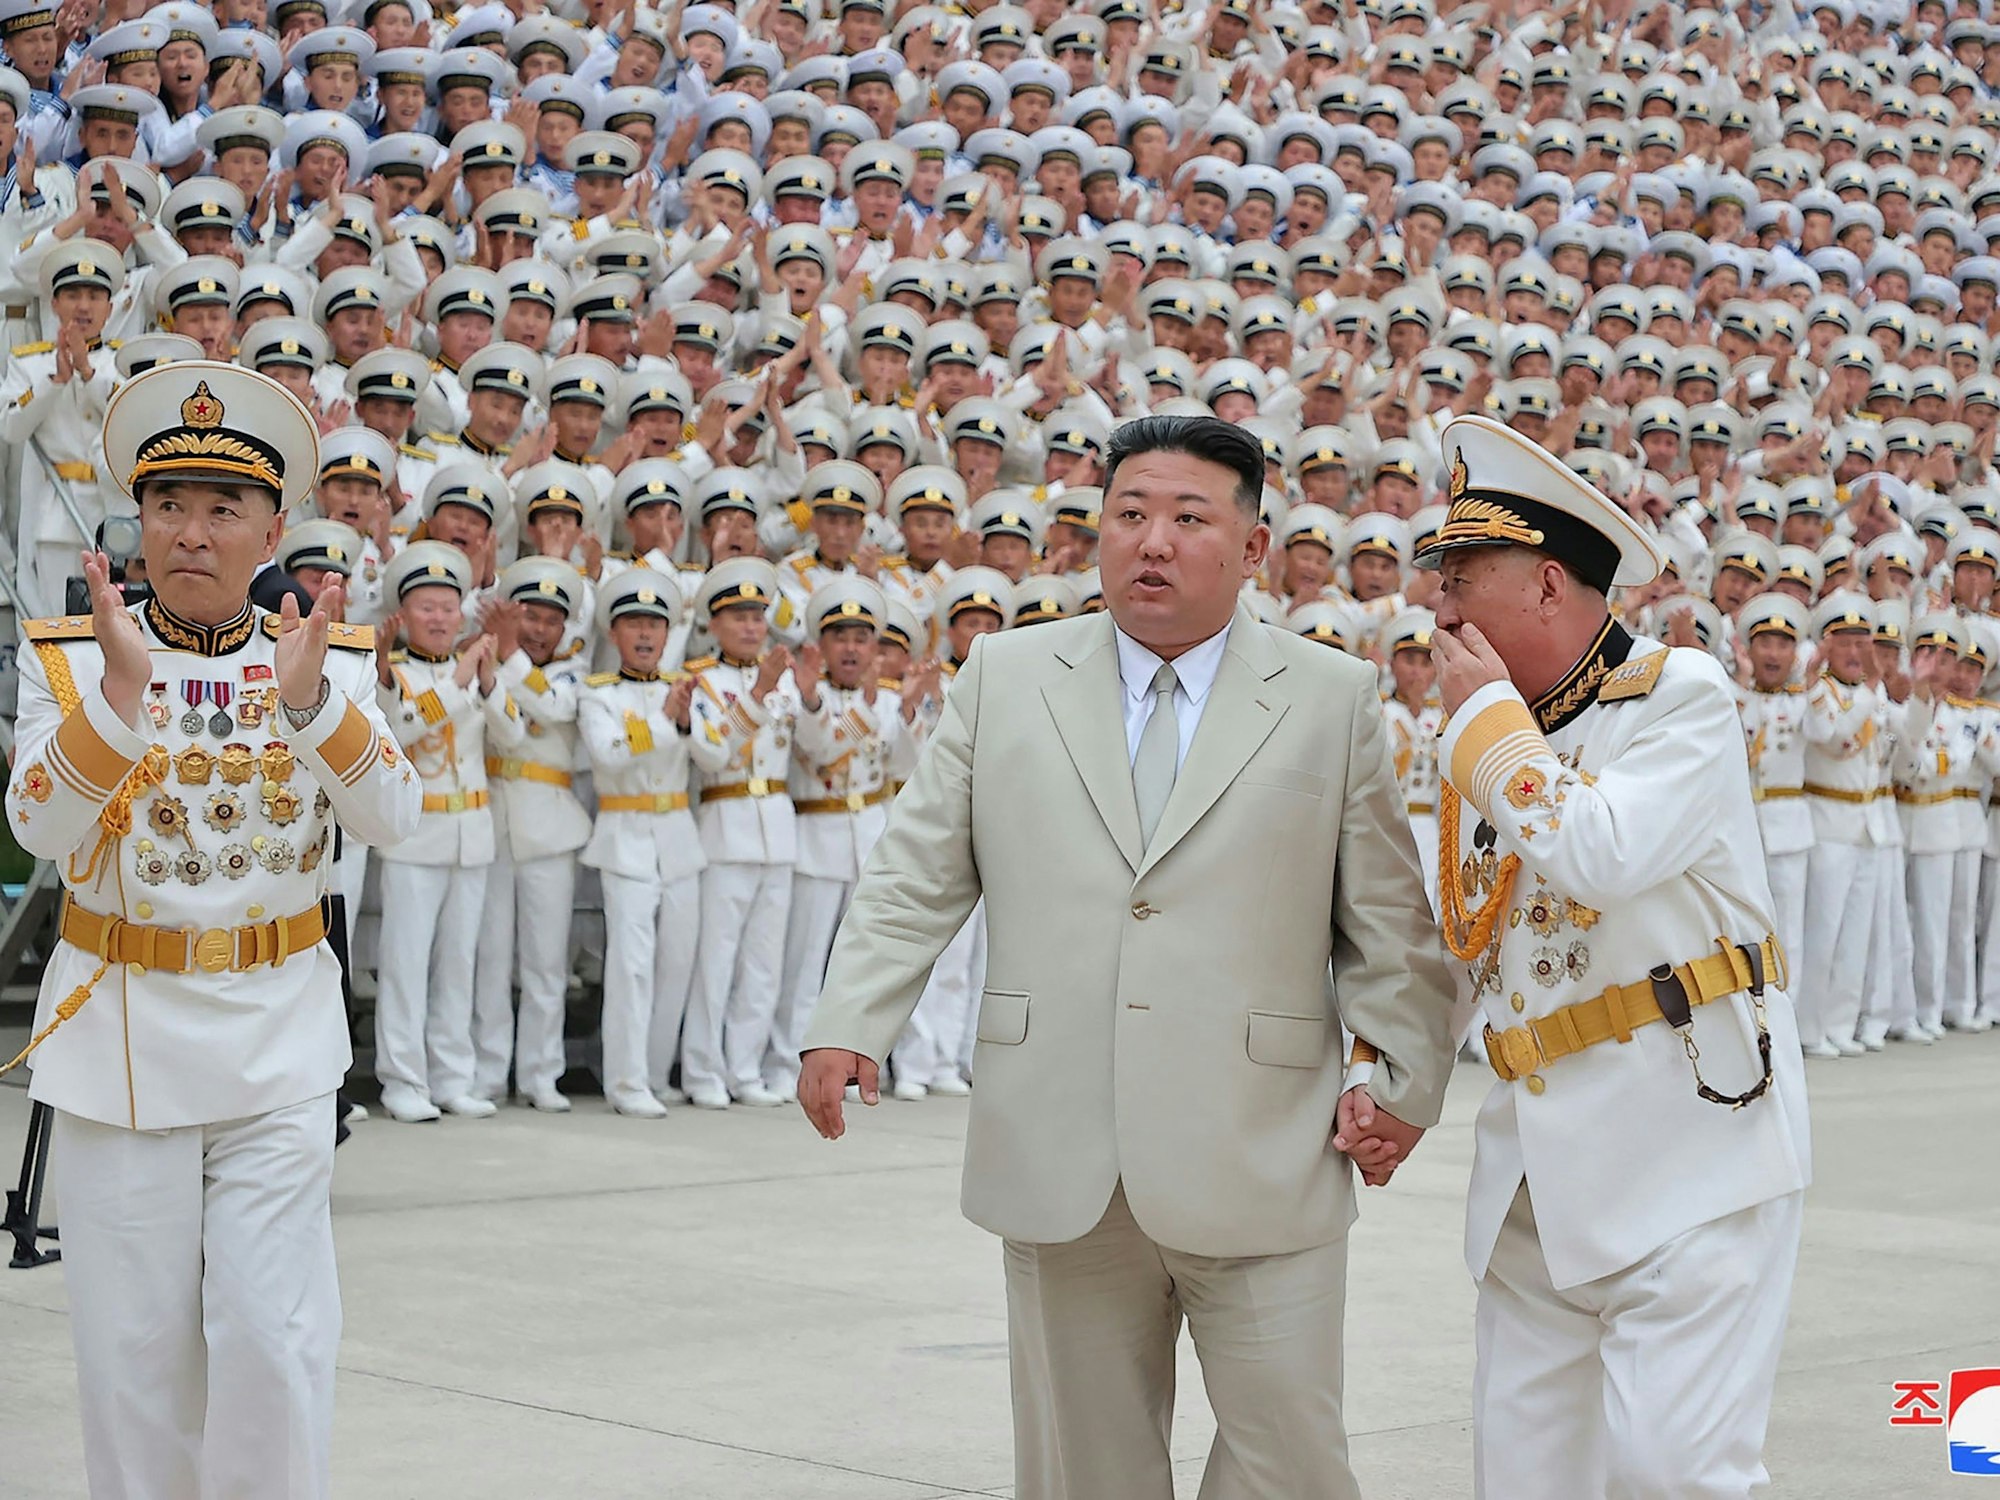 Dieses am 27. August 2023 aufgenommene und von Nordkoreas offizieller Nachrichtenagentur (KCNA) veröffentlichte Bild zeigt Nordkoreas Führer Kim Jong Un (Mitte) beim Besuch der Marine an einem nicht genannten Ort in Nordkorea.